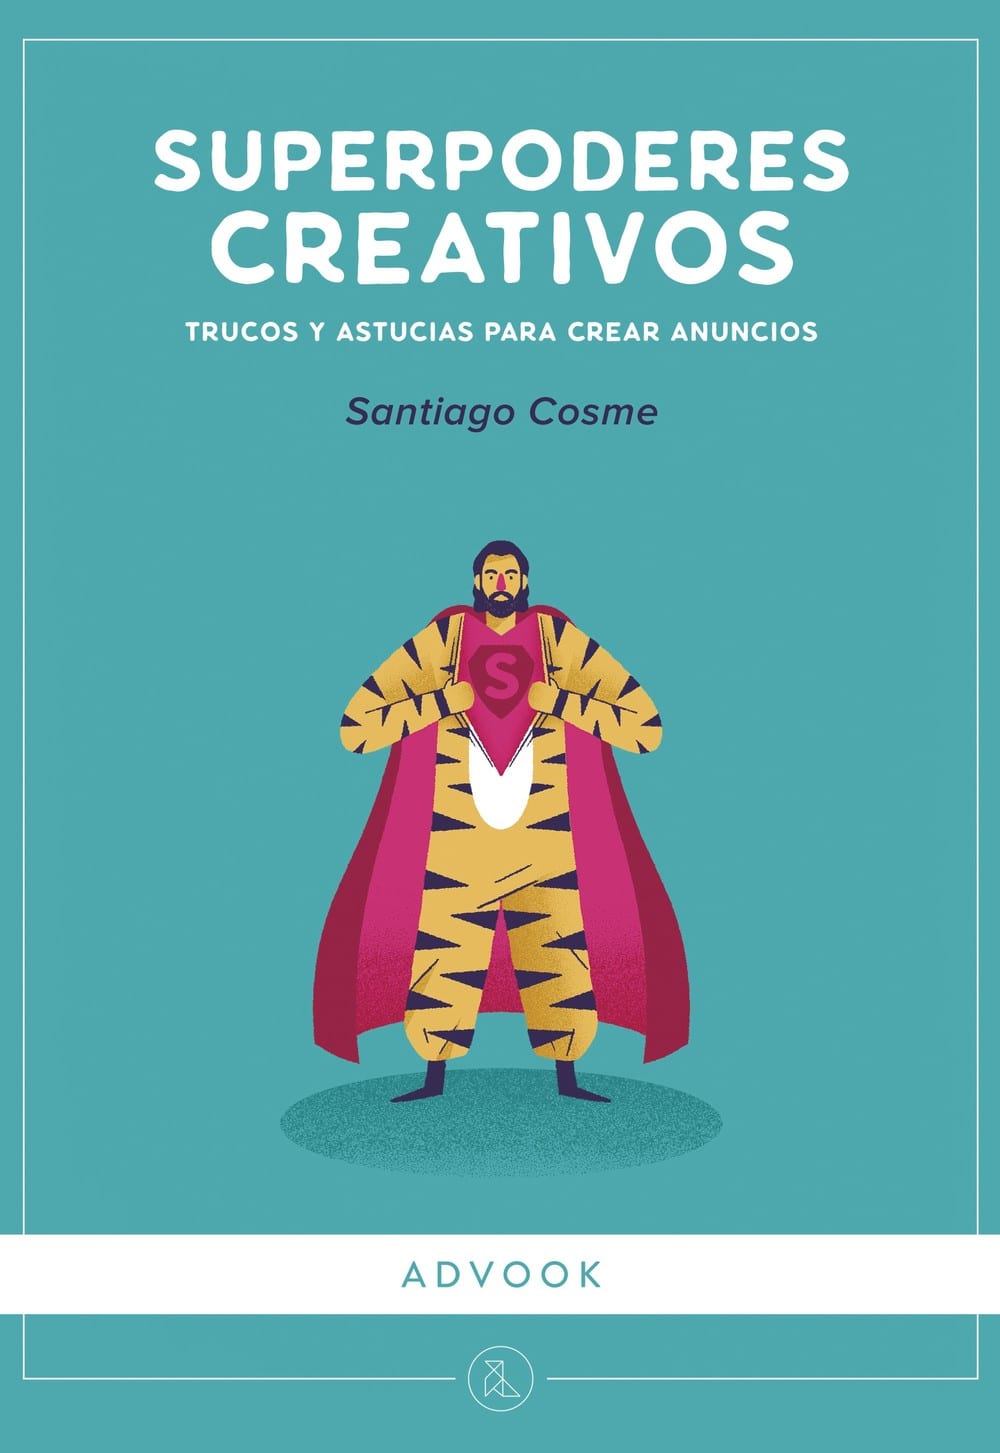 Superpoderes creativos – Santiago Cosme